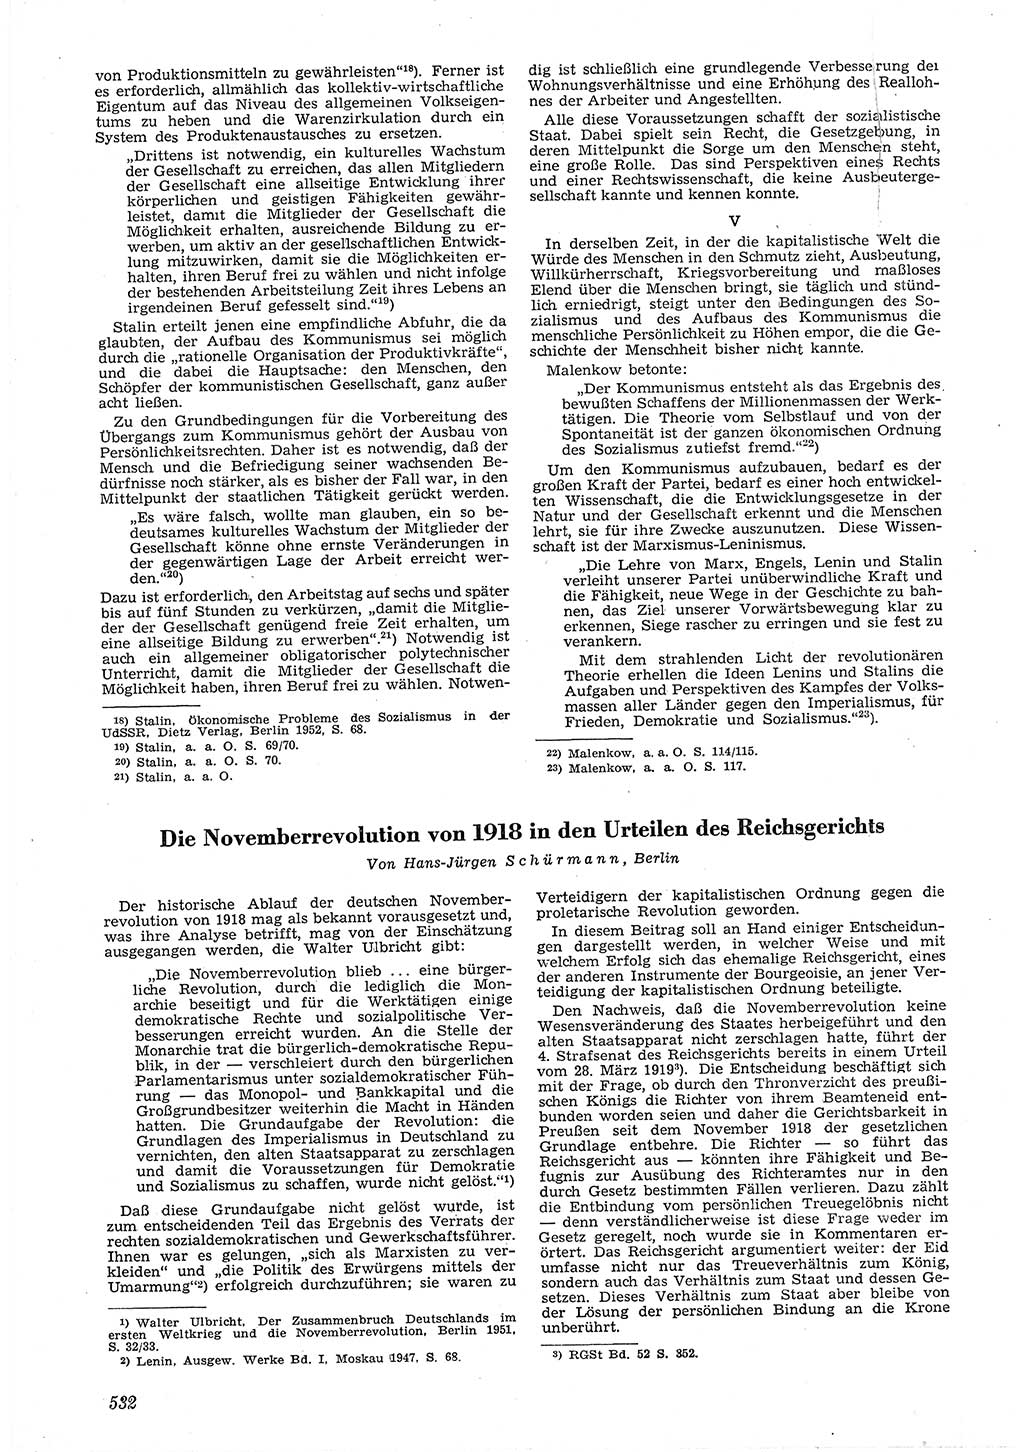 Neue Justiz (NJ), Zeitschrift für Recht und Rechtswissenschaft [Deutsche Demokratische Republik (DDR)], 6. Jahrgang 1952, Seite 532 (NJ DDR 1952, S. 532)